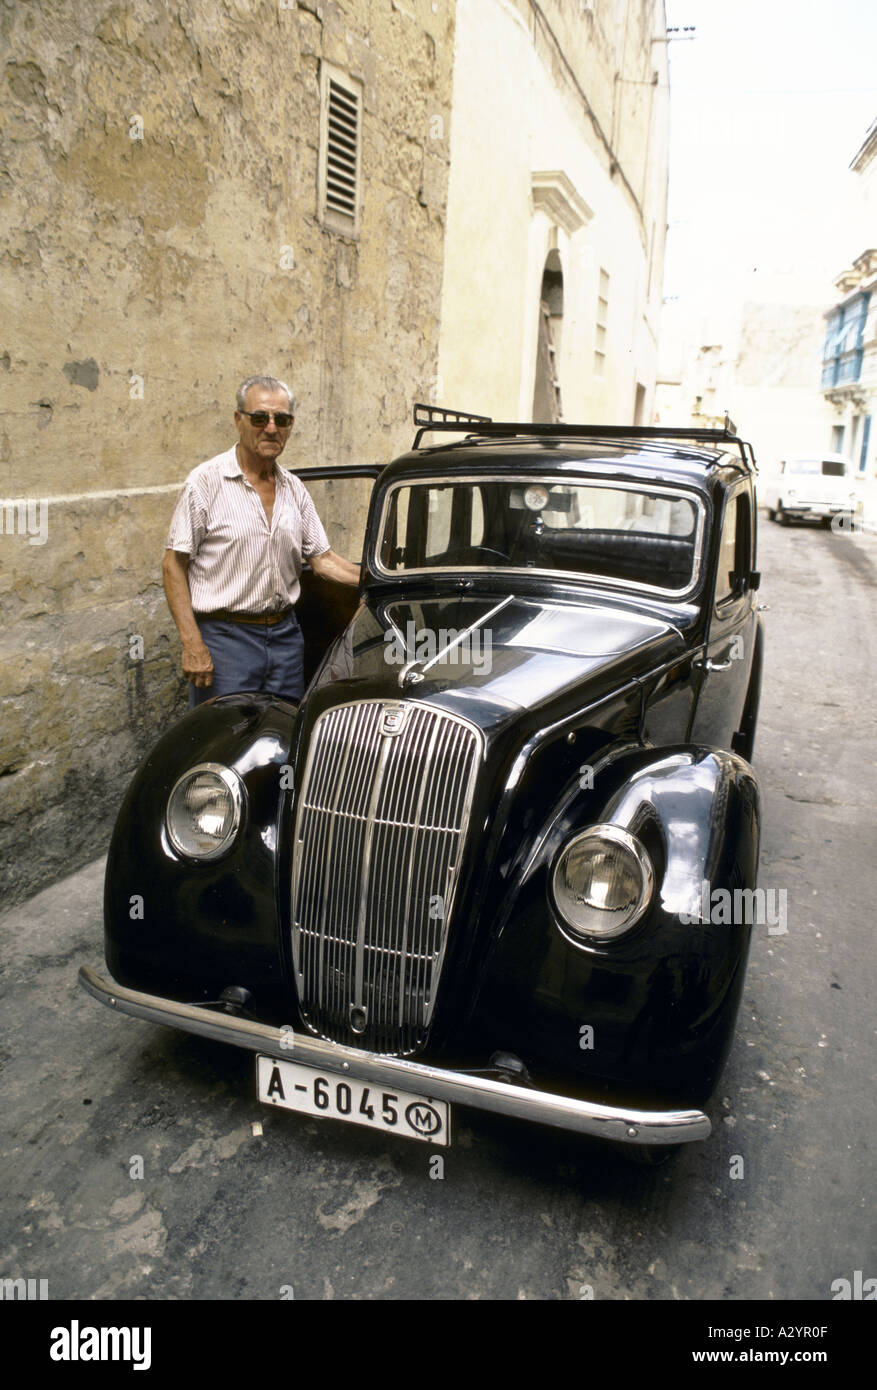 Malta dreißig Jahre alten ford beliebte Auto mit ihm s Besitzer sowohl als neue 1986 Stockfoto